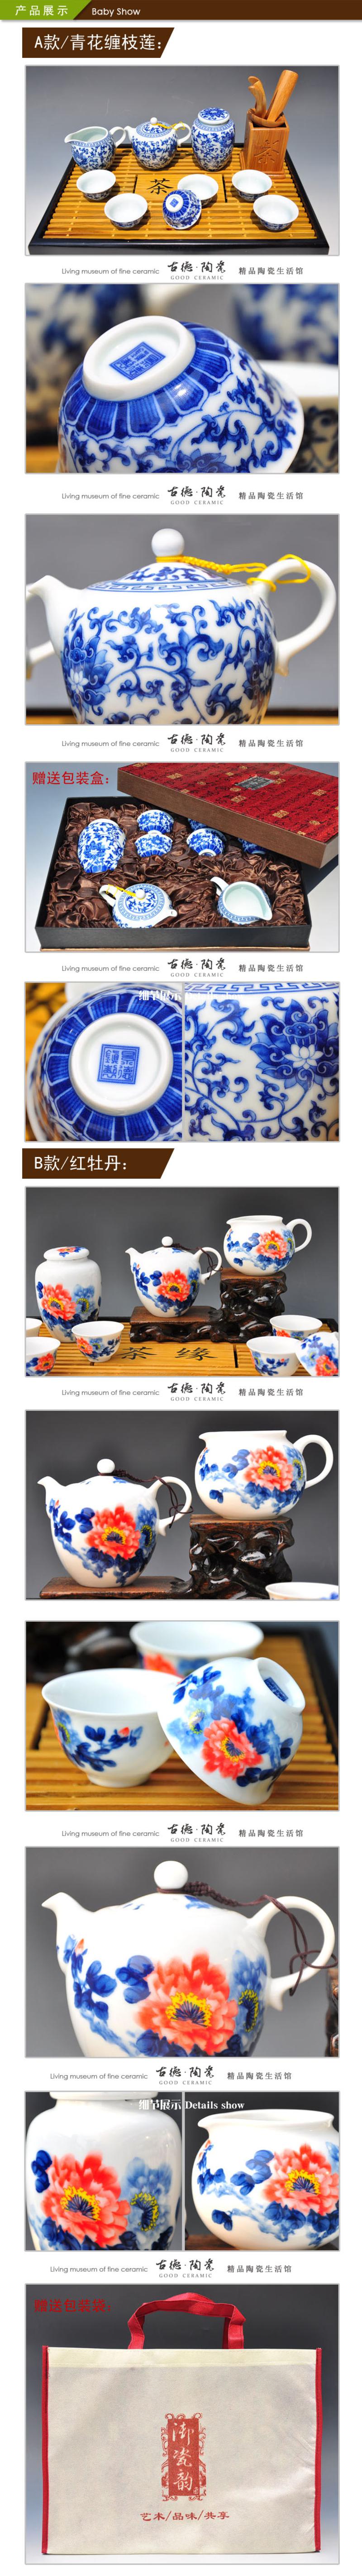 【景邮陶瓷】景德镇精品陶瓷茶具 9头骨瓷功夫茶具 礼品套装 红牡丹 青花缠枝莲